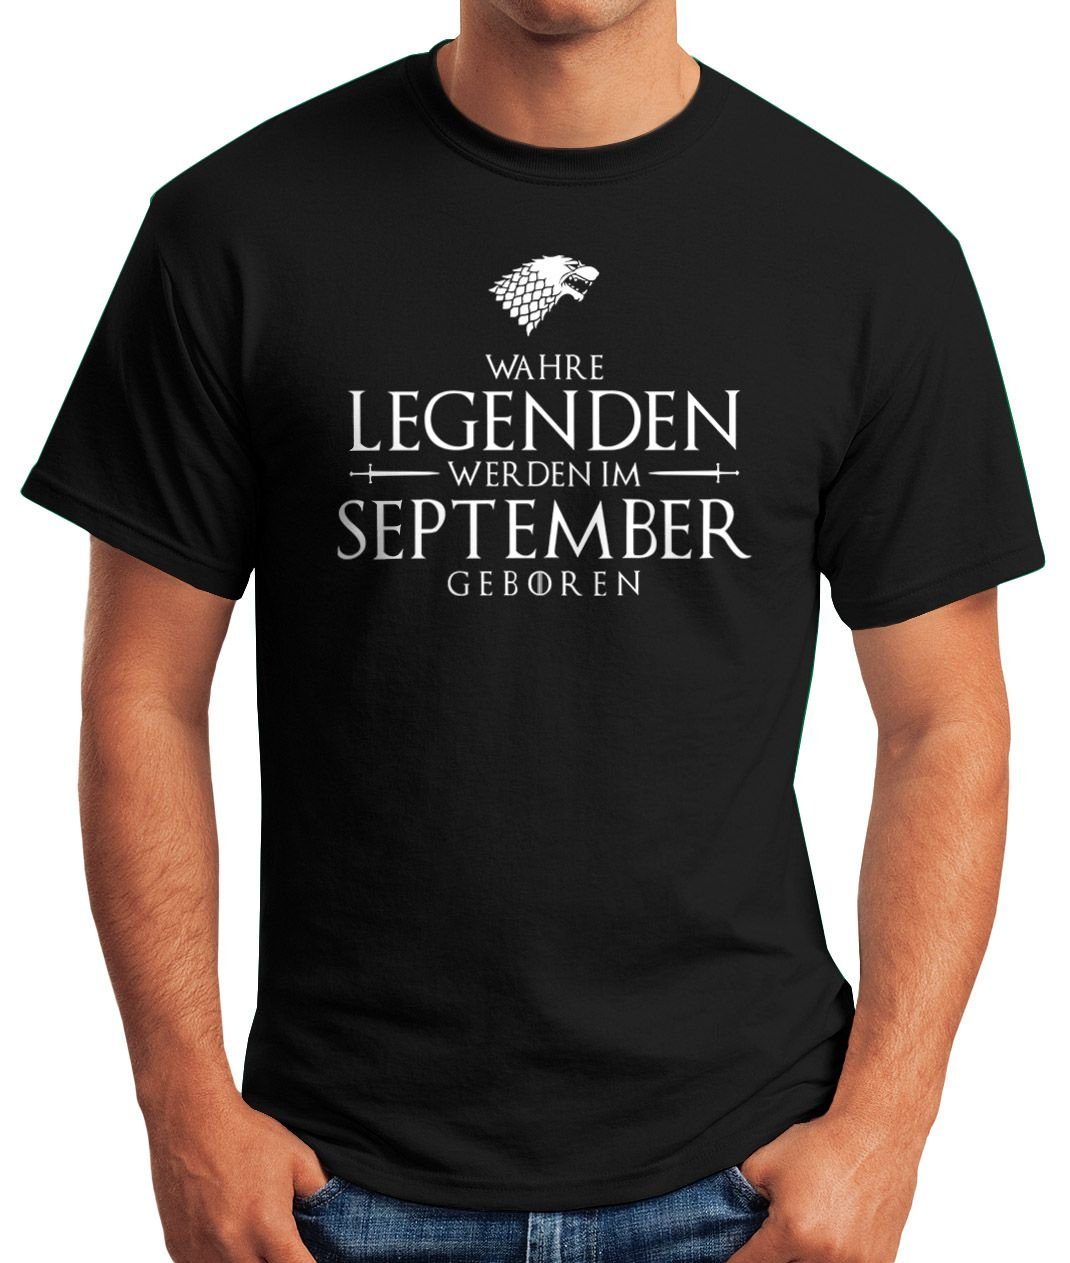 Legenden Moonworks® werden Fun-Shirt geboren September mit T-Shirt im Herren [object Object] MoonWorks Wahre Print Print-Shirt schwarz